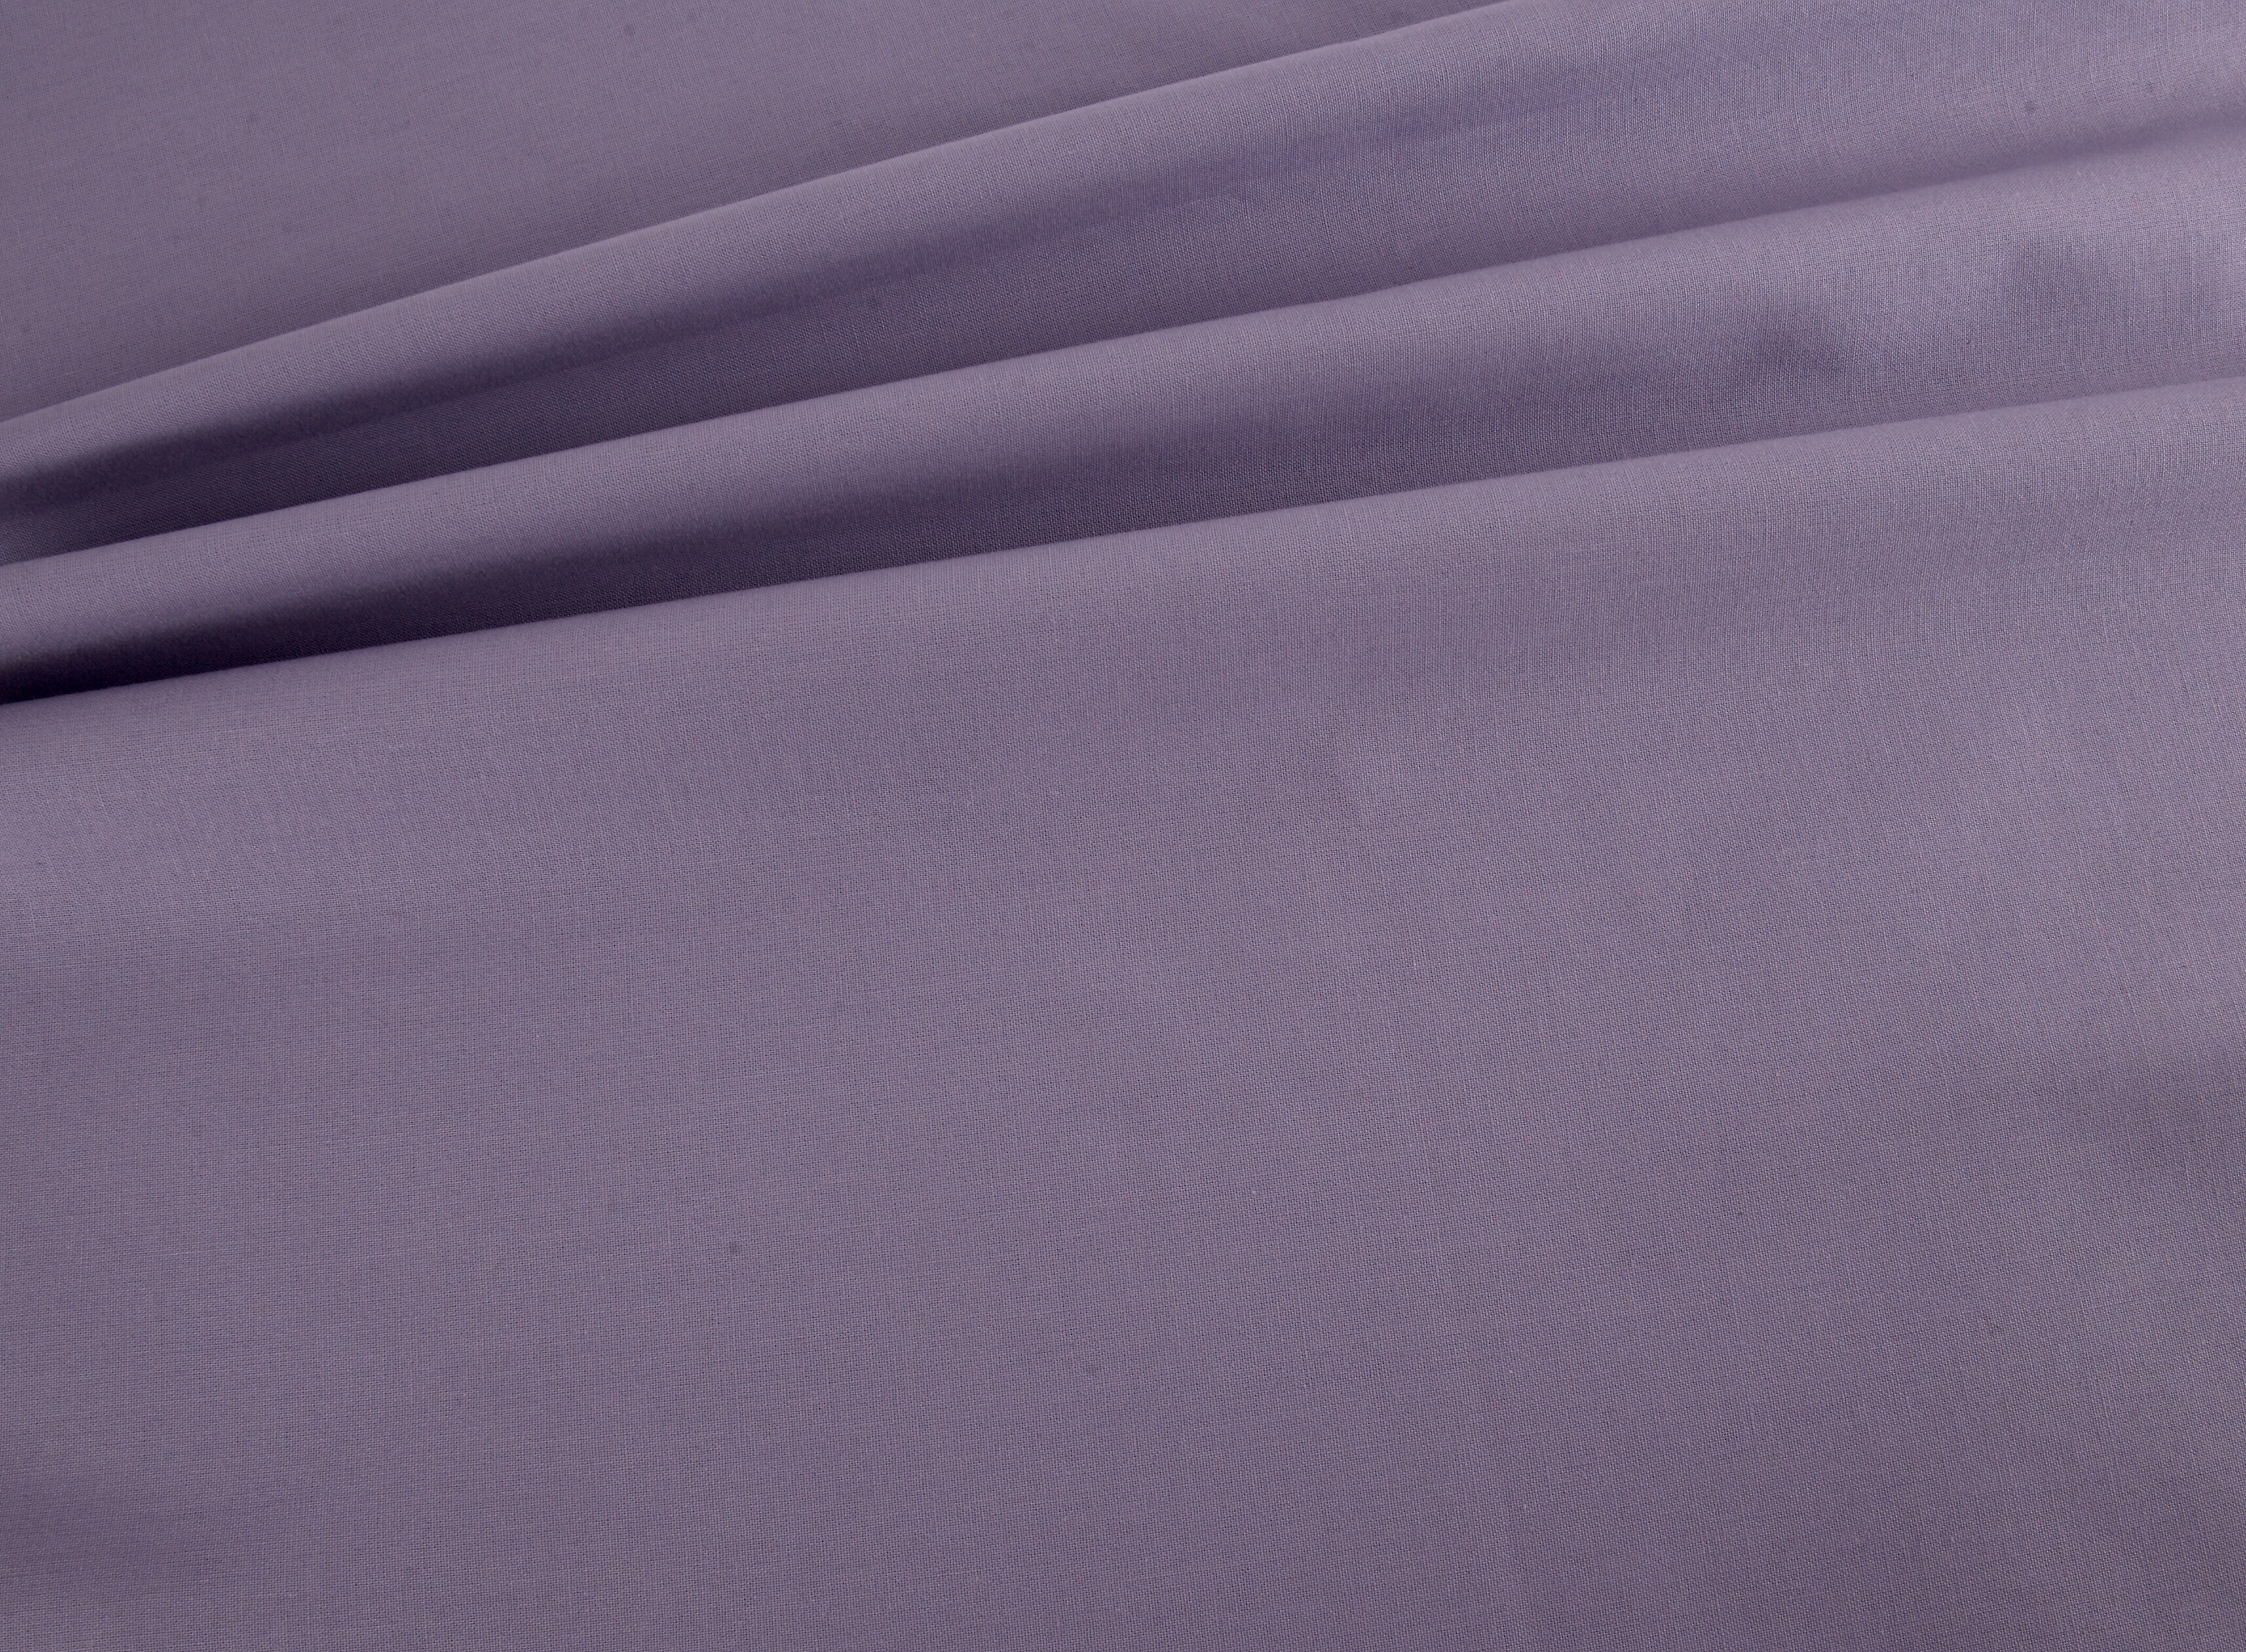 Lilac cotton fabric price per 0.5m